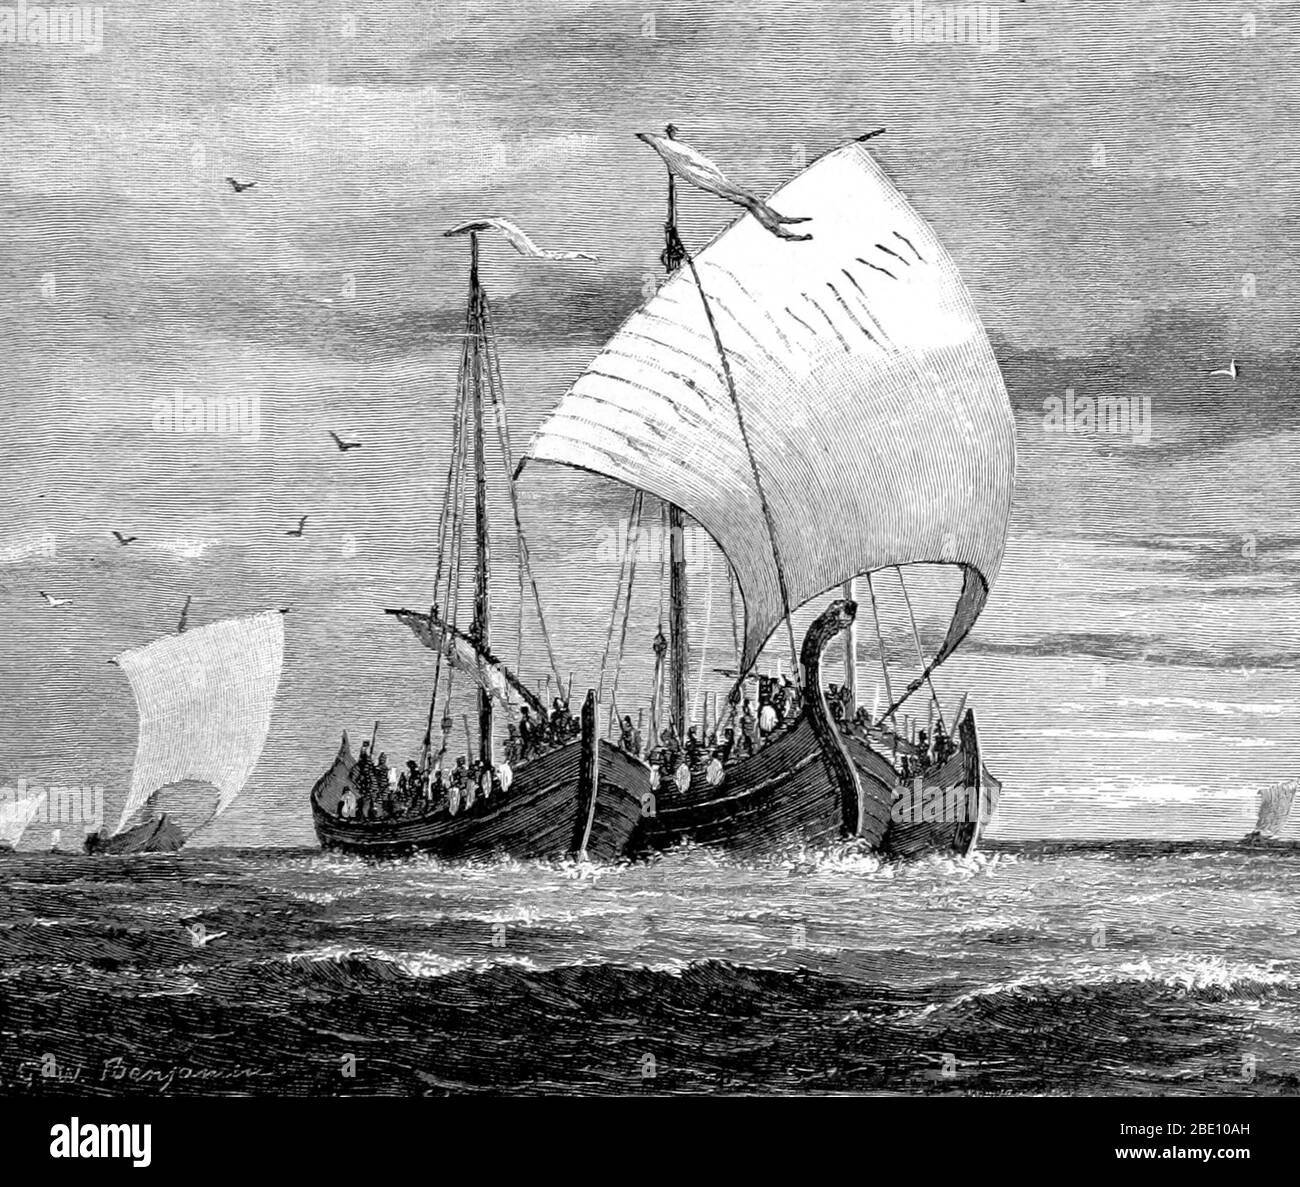 I vichinghi erano marittimi norrani che dalle loro terre di origine in Scandinavia razziavano, commerciavano, esploravano e si stabilivano in vaste aree dell'Europa, dell'Asia e delle isole dell'Atlantico del Nord dalla fine dell'ottavo alla metà dell'XI secolo. I Vichinghi impiegarono longships di legno con scafi larghi e poco profondi, permettendo la navigazione in acque di mare o di fiume poco profonde. Le navi potevano essere sbarcate sulle spiagge e il loro peso leggero le consentiva di essere trasportate su portage. Queste navi versatili consentivano ai Vichinghi di stabilirsi e viaggiare fino a Costantinopoli e al fiume Volga in Russia, fino a ovest dell'Islanda, G. Foto Stock